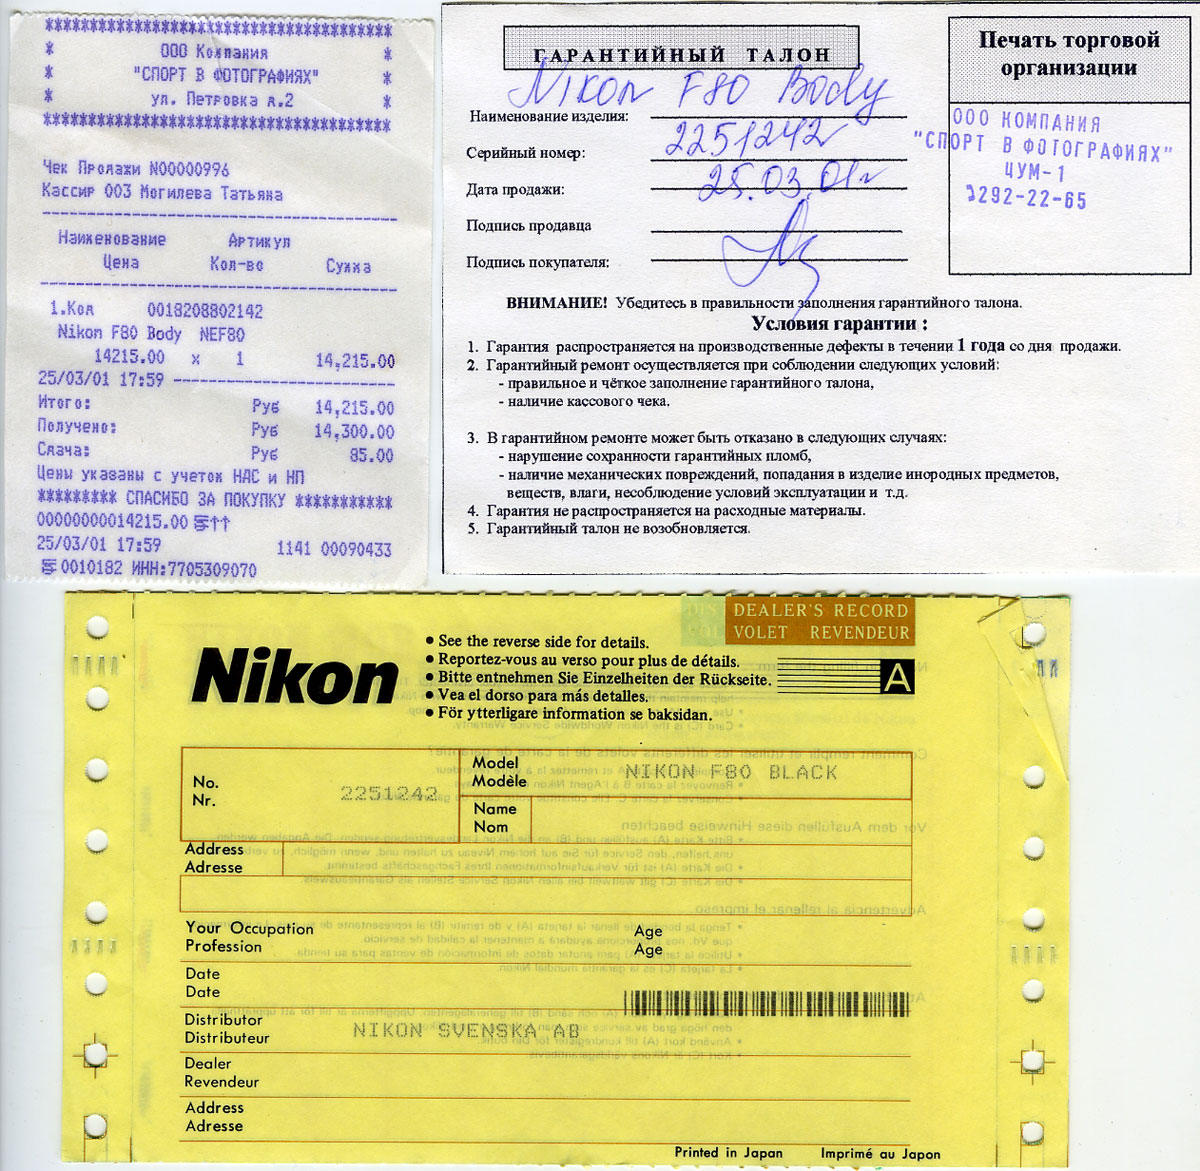 Цена фотокамеры Nikon F80 в 2001 году - 14215 руб. в ЦУМе